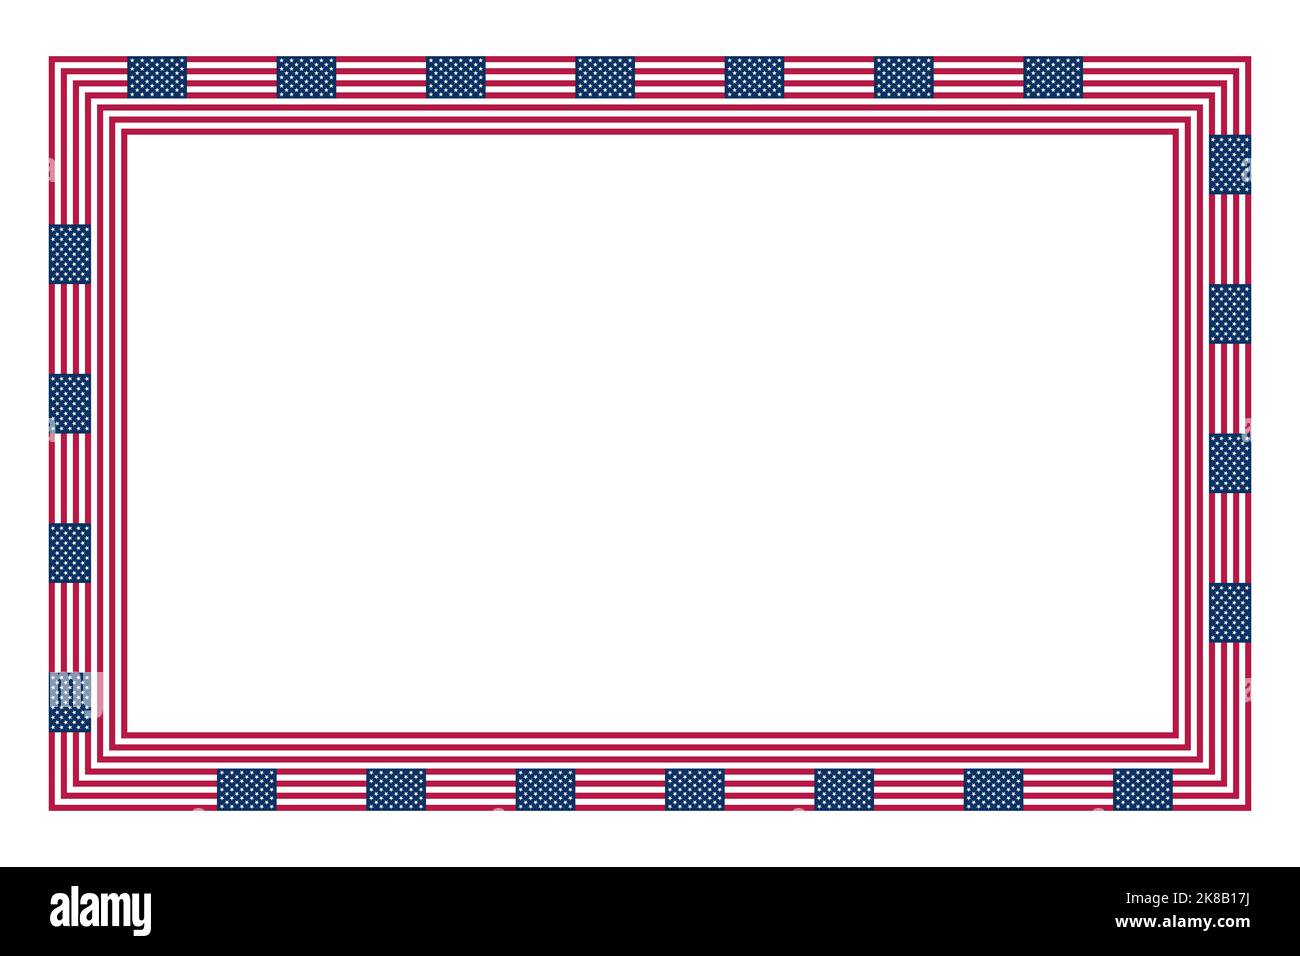 Bandiera degli Stati Uniti, cornice rettangolare. Confine fatto del motivo ripetuto della bandiera nazionale degli Stati Uniti d'America. Foto Stock